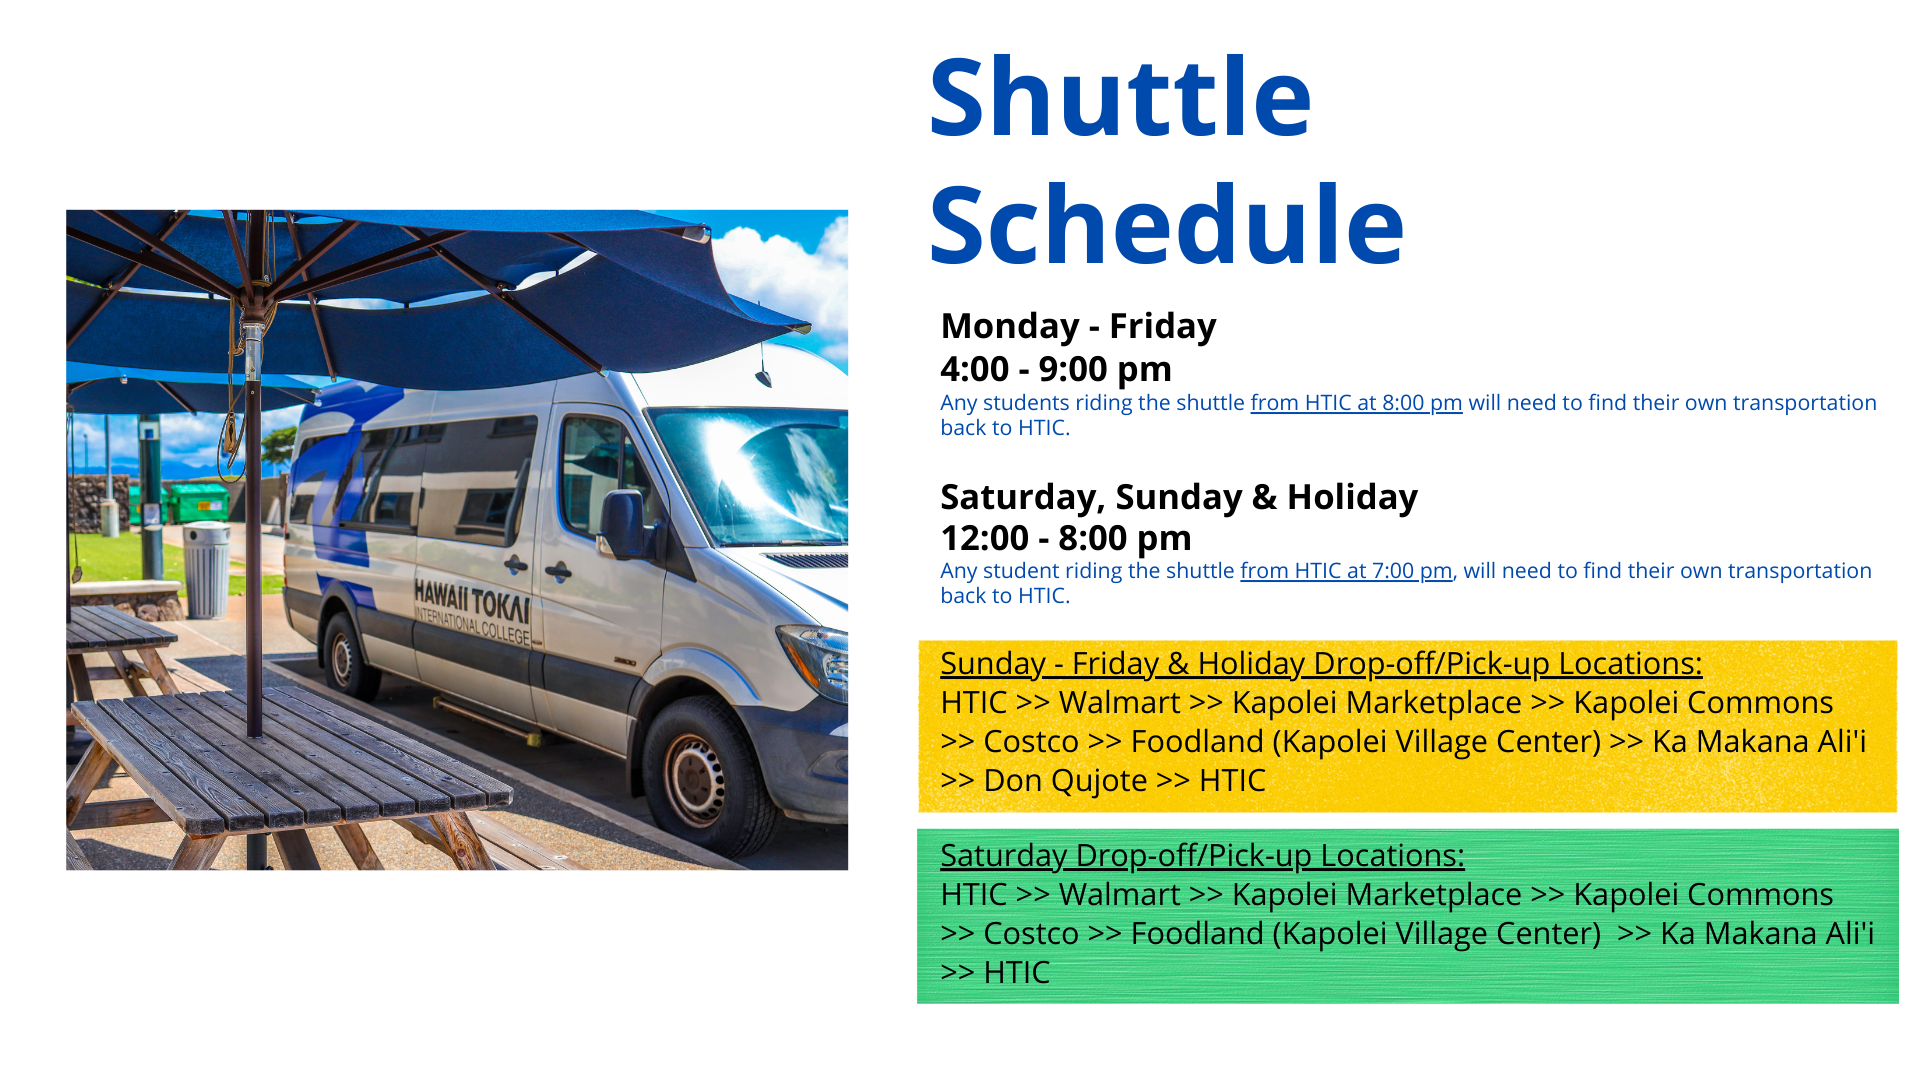 Shuttle Schedule 2018